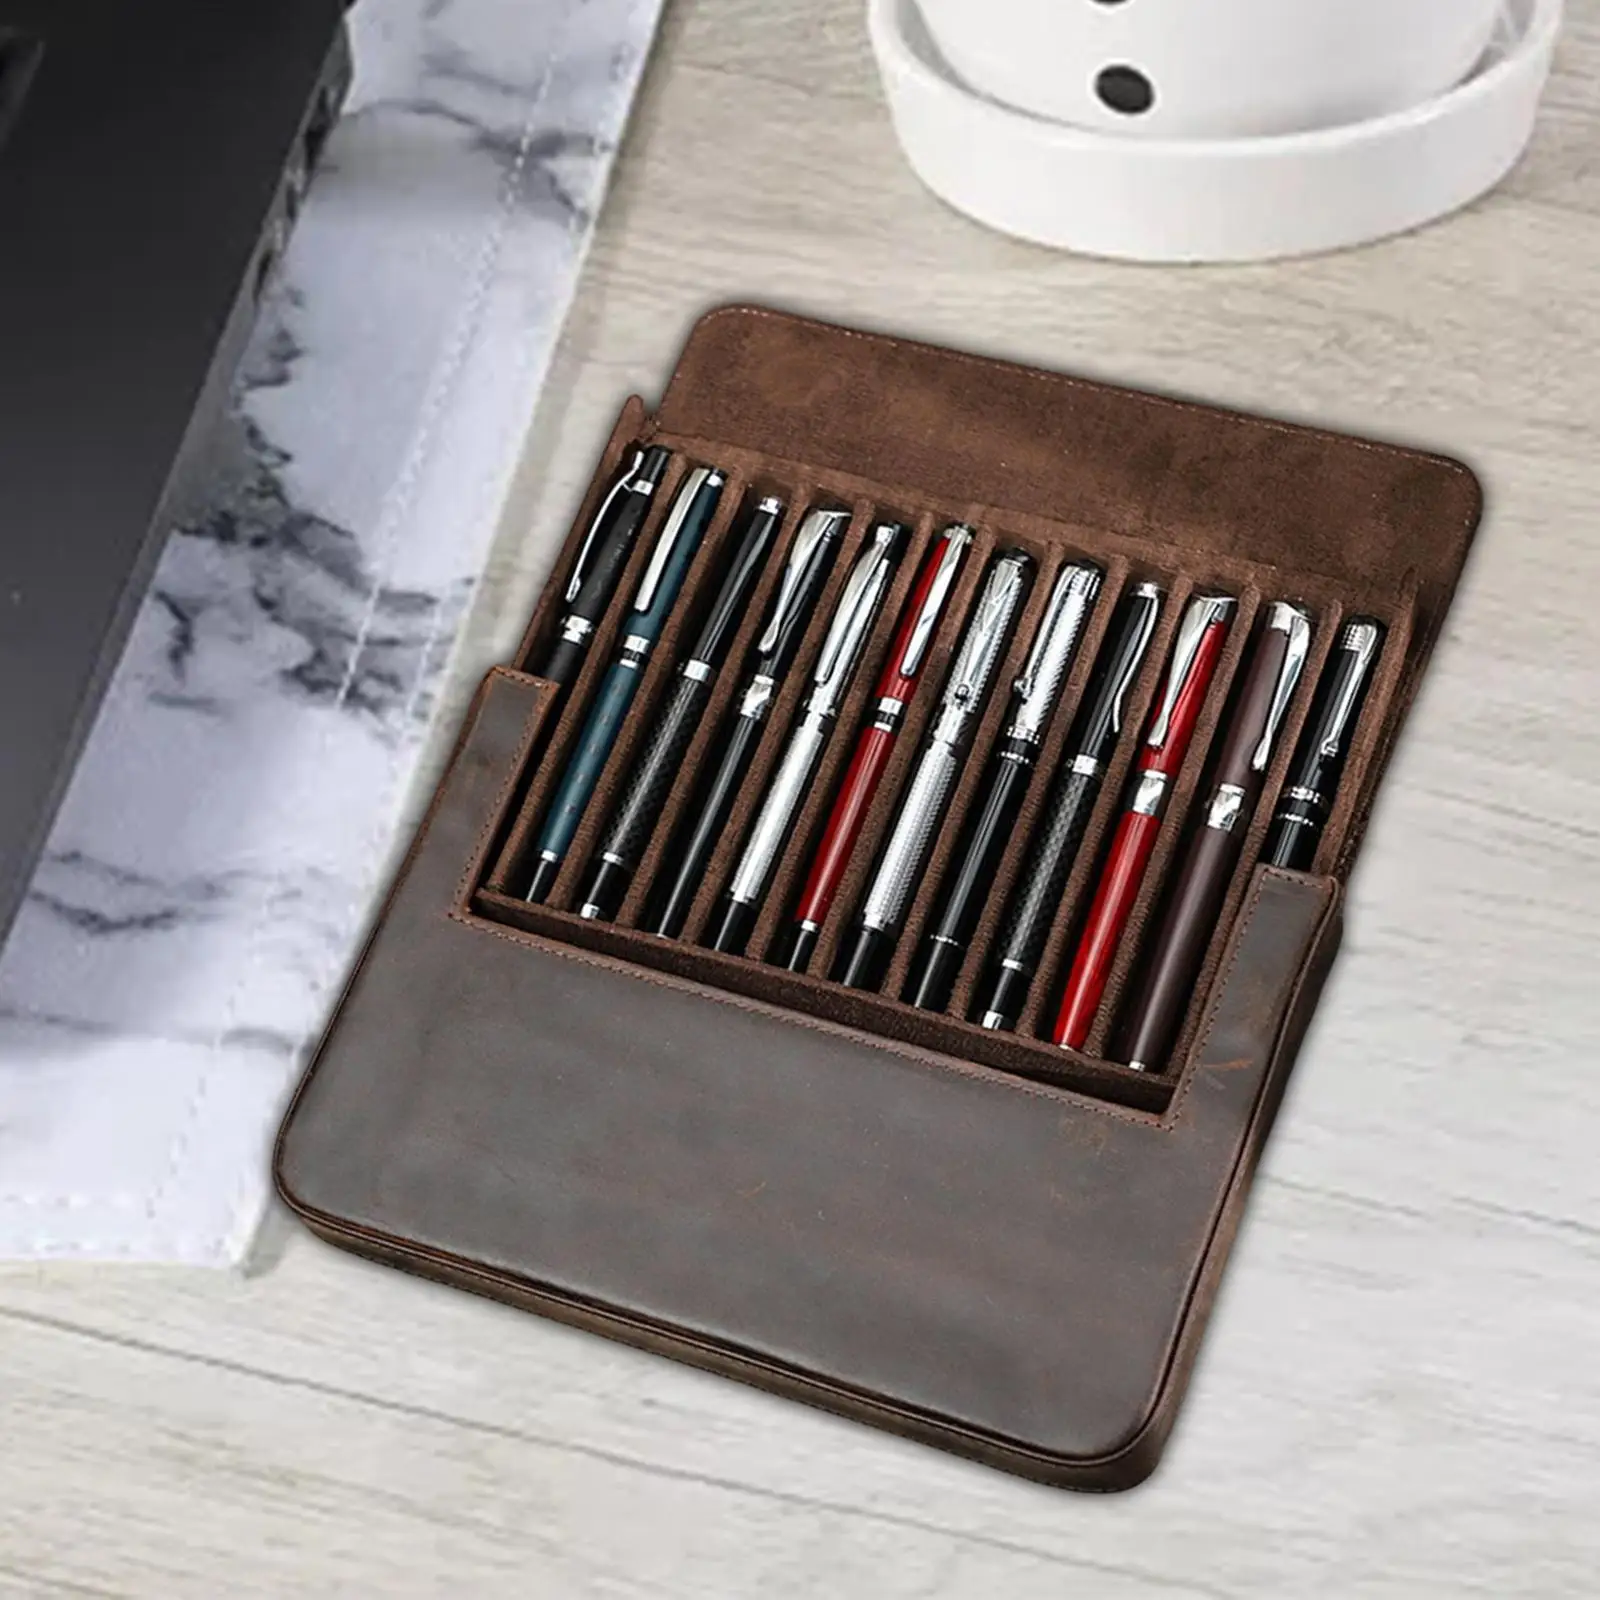 Portable Pen Cases Pen Holder 12 Slot Cases Sleeves Pens Pouch Large Capacity Stationery Bag Handmade for Boyfriend Husband Men